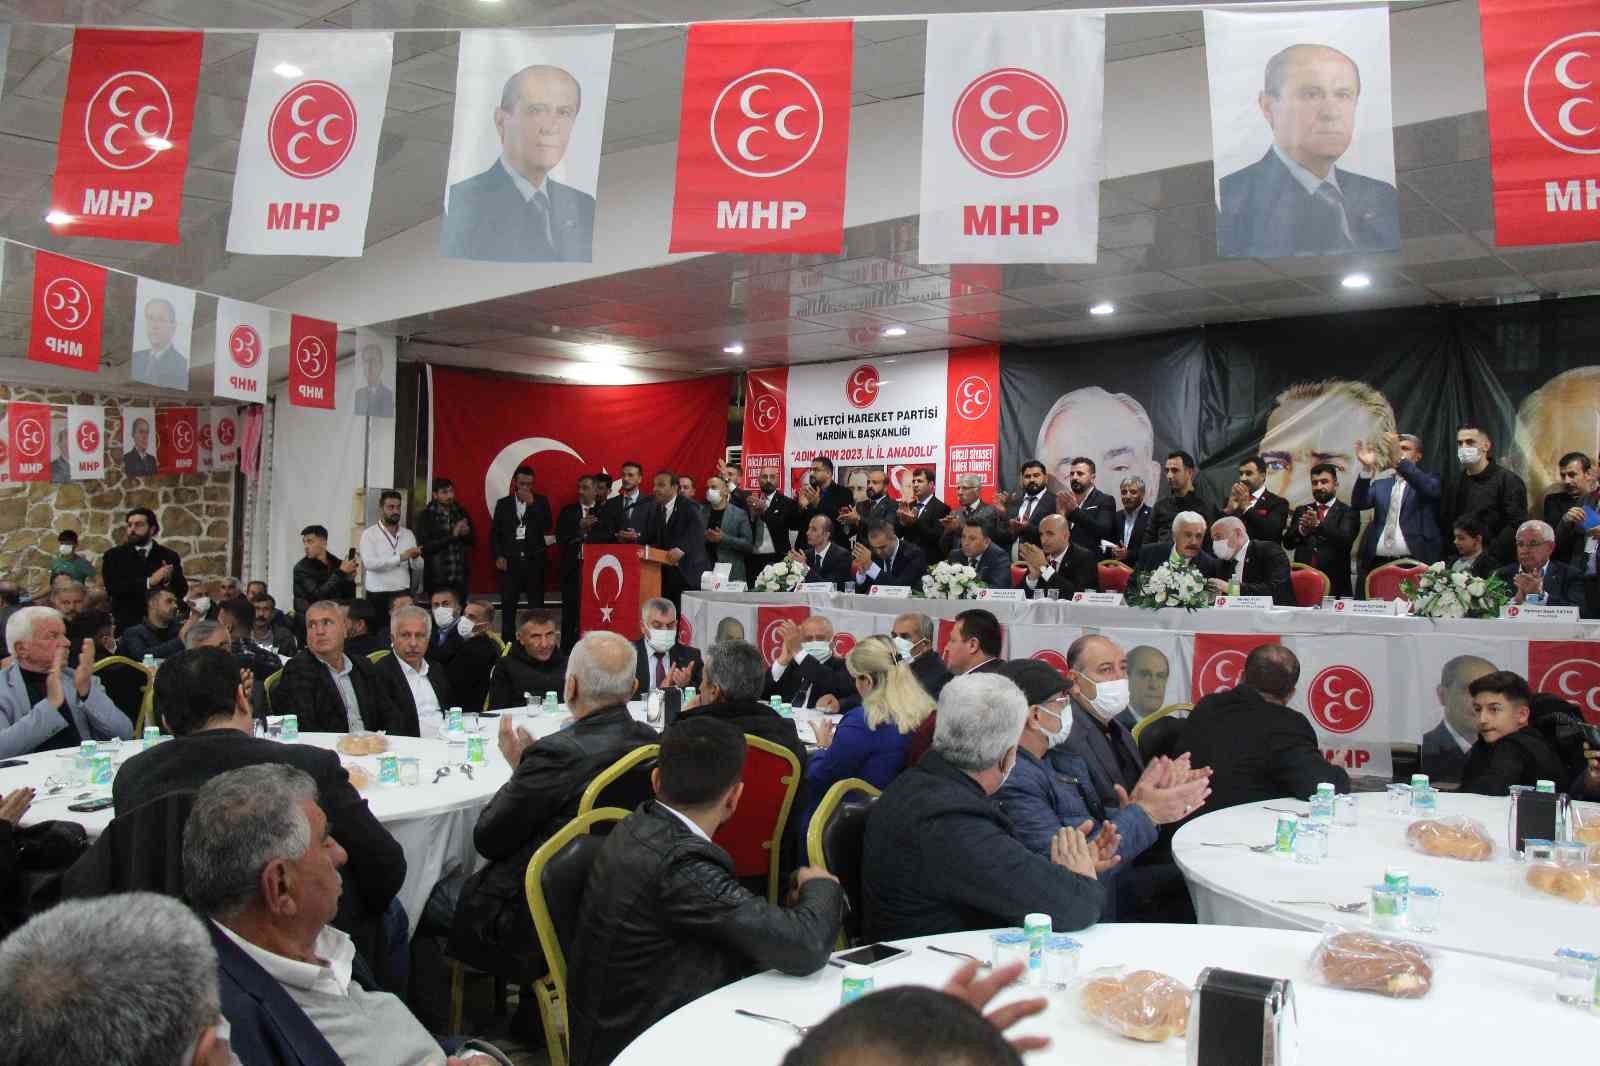 MHP’li Kılavuz: “Doğu ve Güneydoğu, huzurun ve güvenin adresidir” #mardin